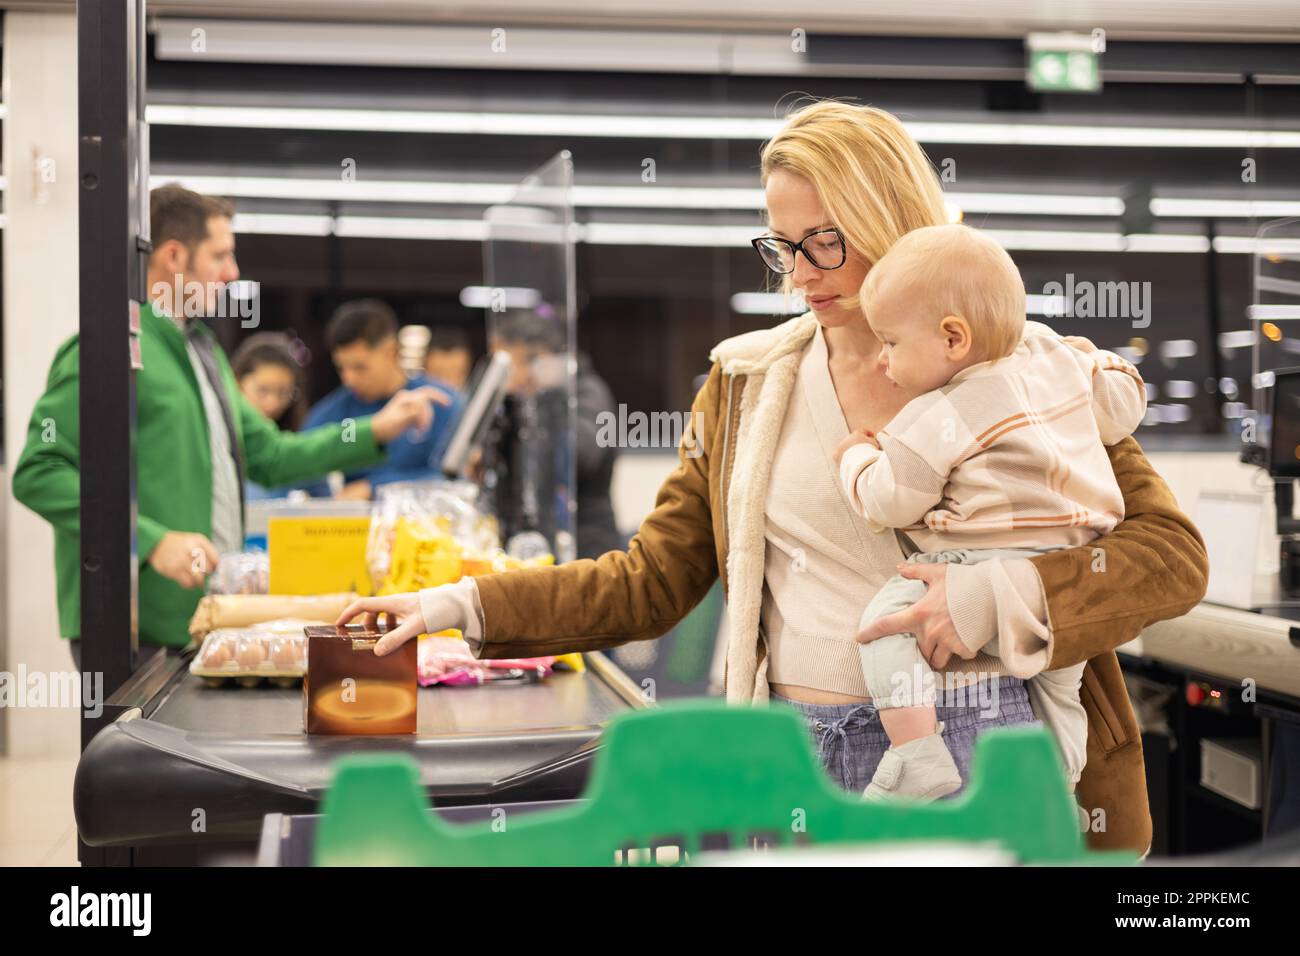 Mutter kauft mit ihrem kleinen Jungen ein und hält das Kind, während sie Produkte an der Kasse im Supermarkt stapelt. Stockfoto